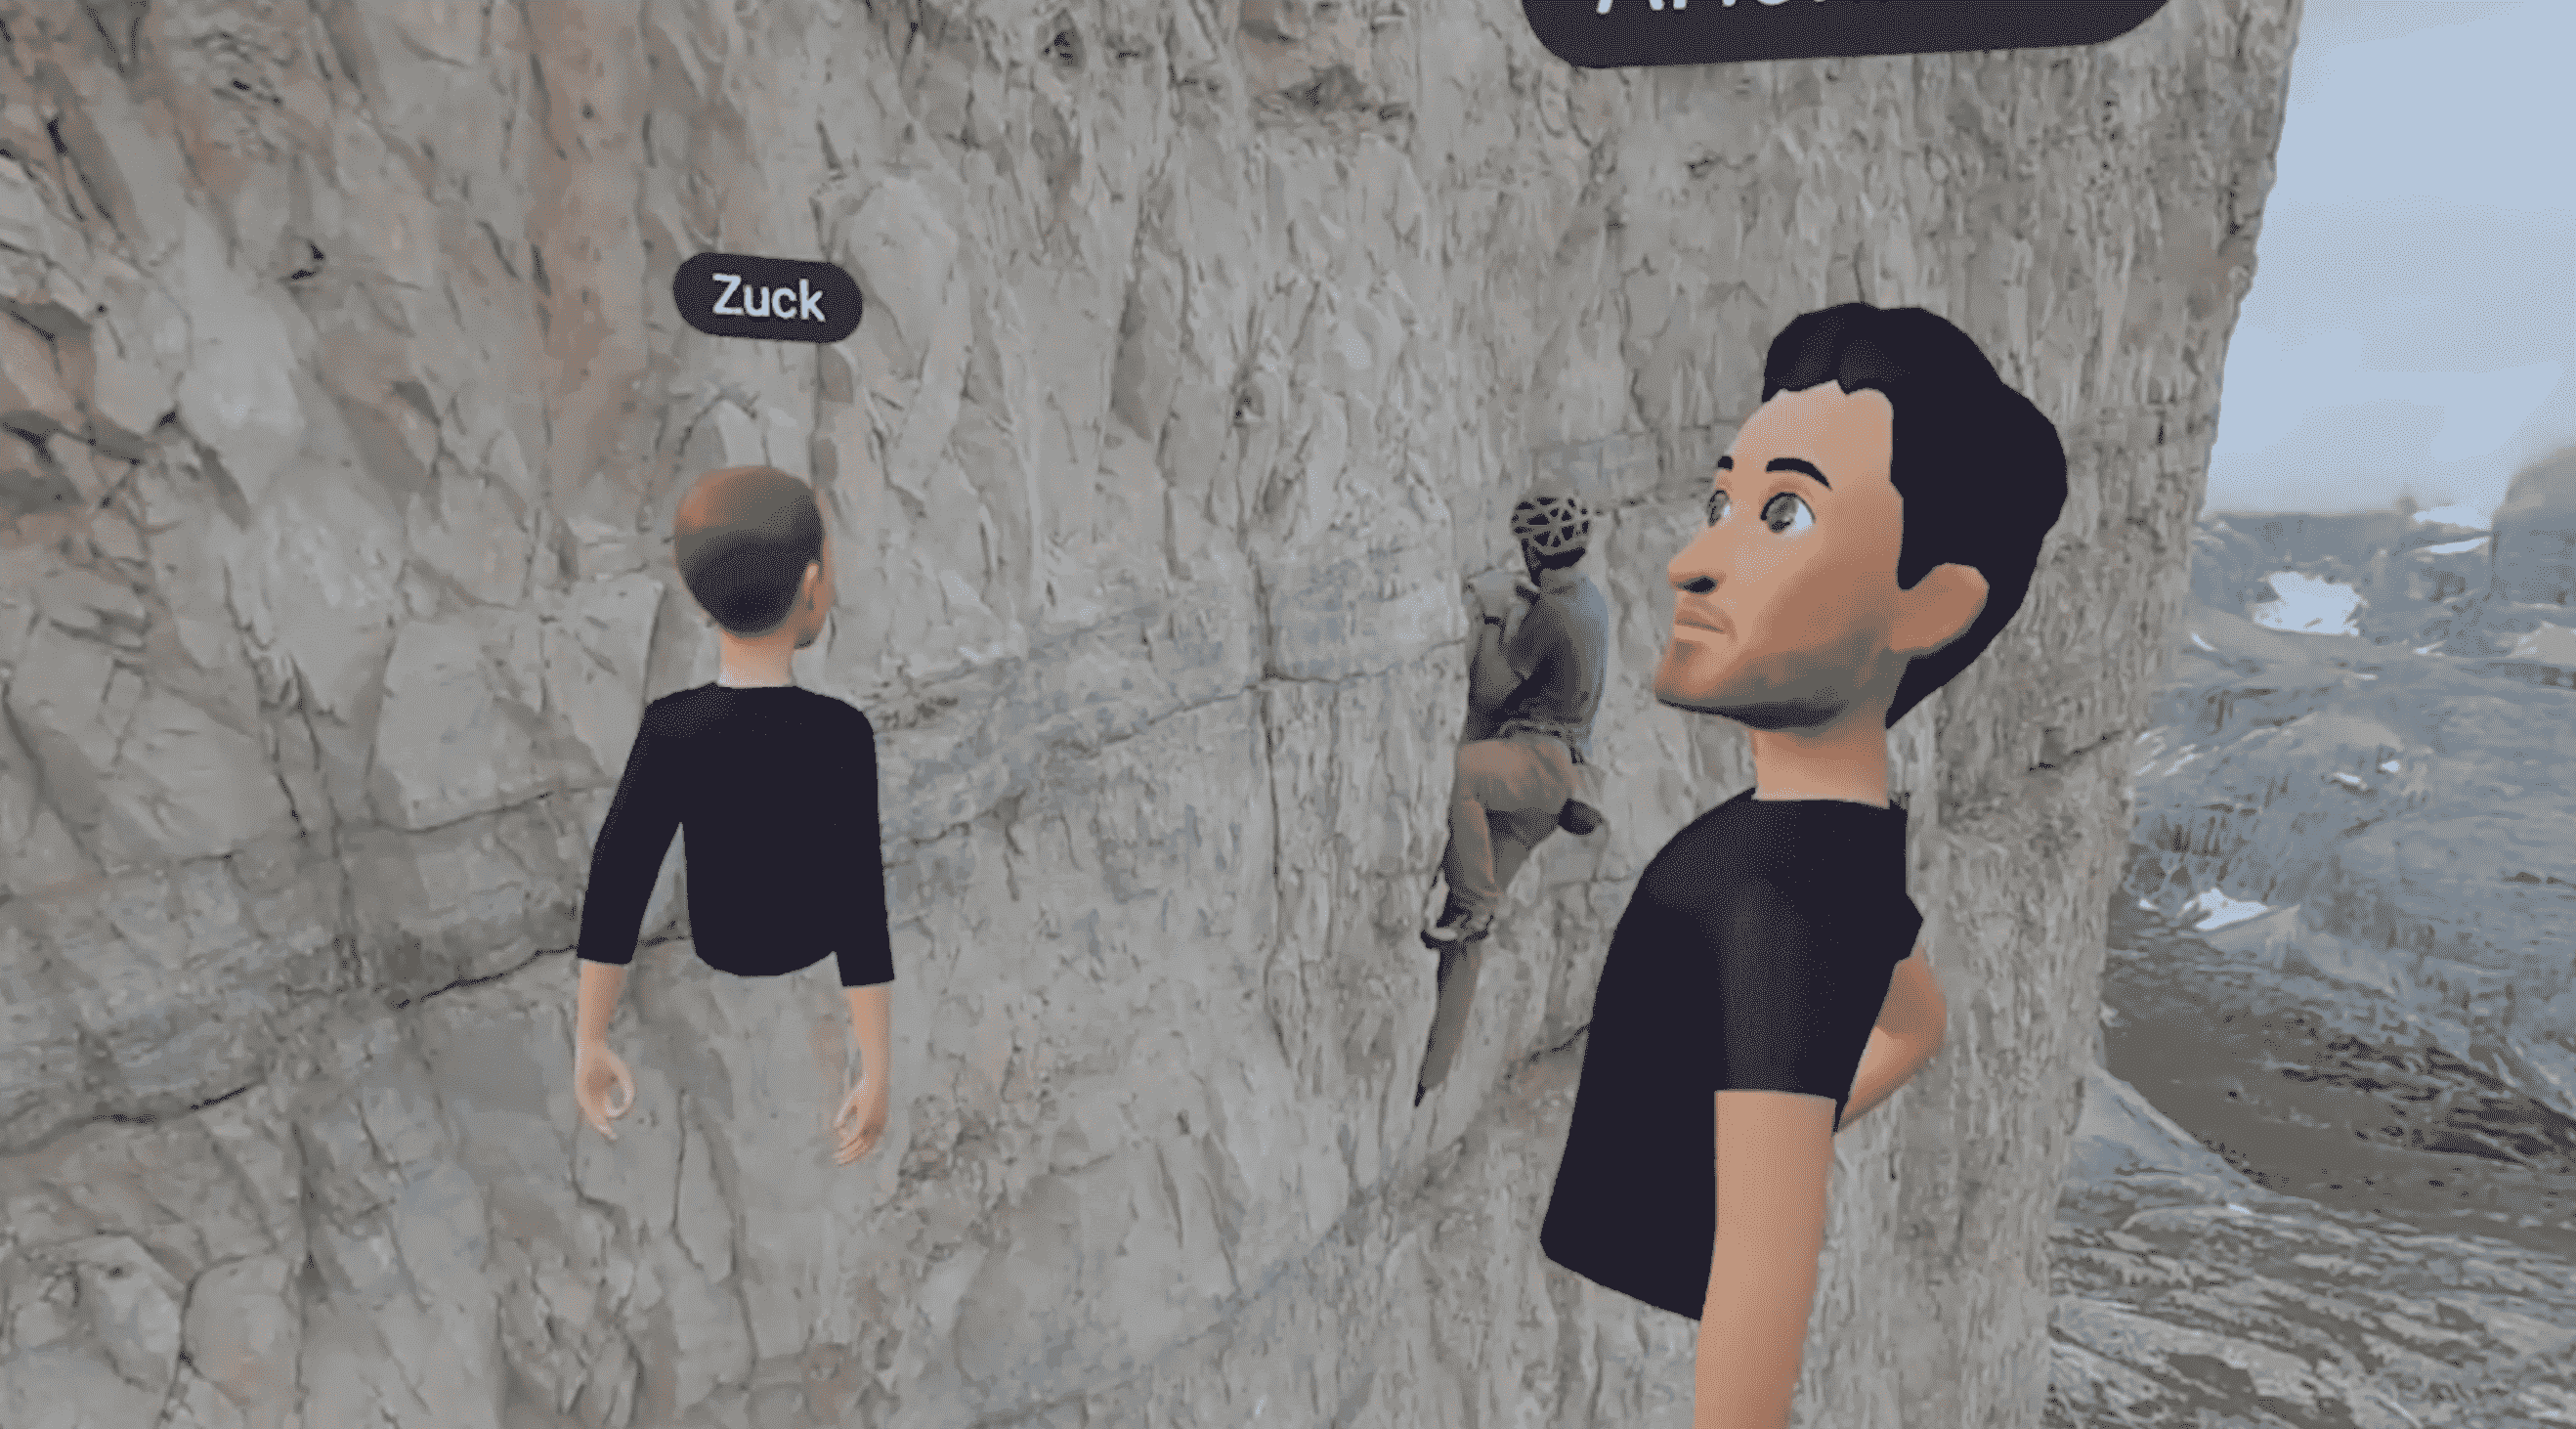 Mark ve Alex'in avatarları, Alex'in bir uçuruma tırmanışının videosunu izliyor